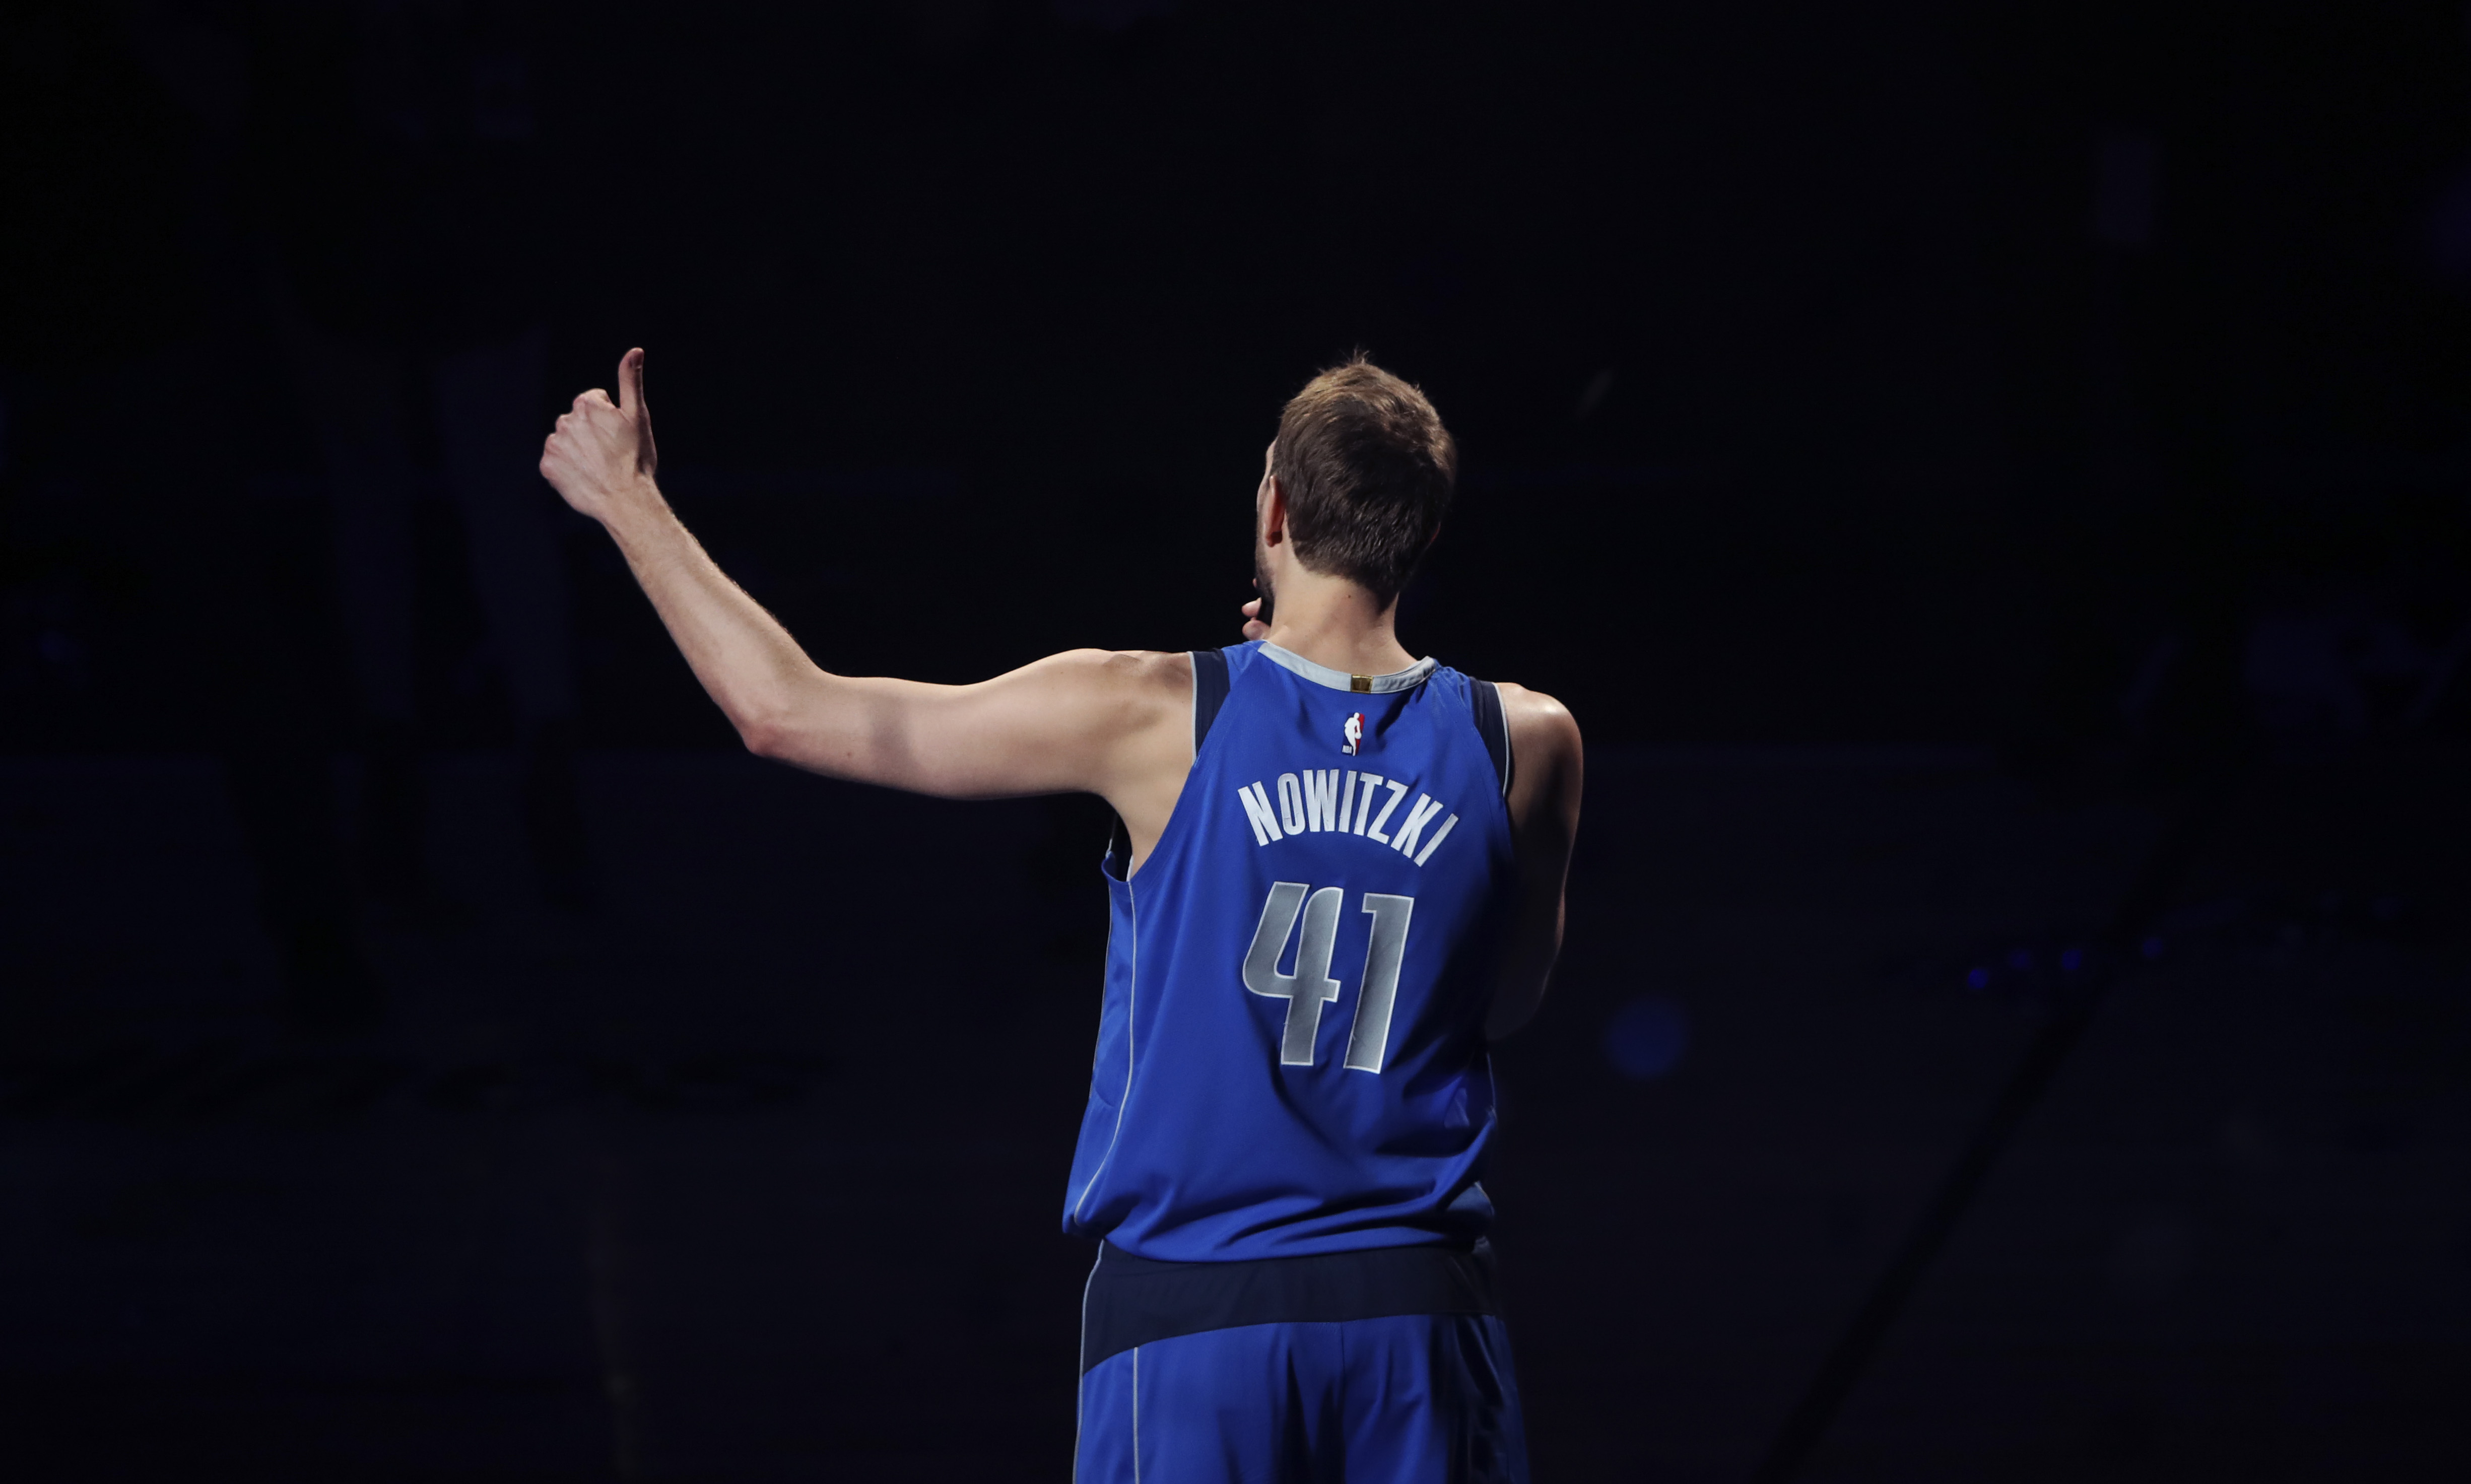 Andrew Halliday clase especificación Mavericks to retire Dirk Nowitzki's No. 41 jersey on Jan. 5 | Reuters